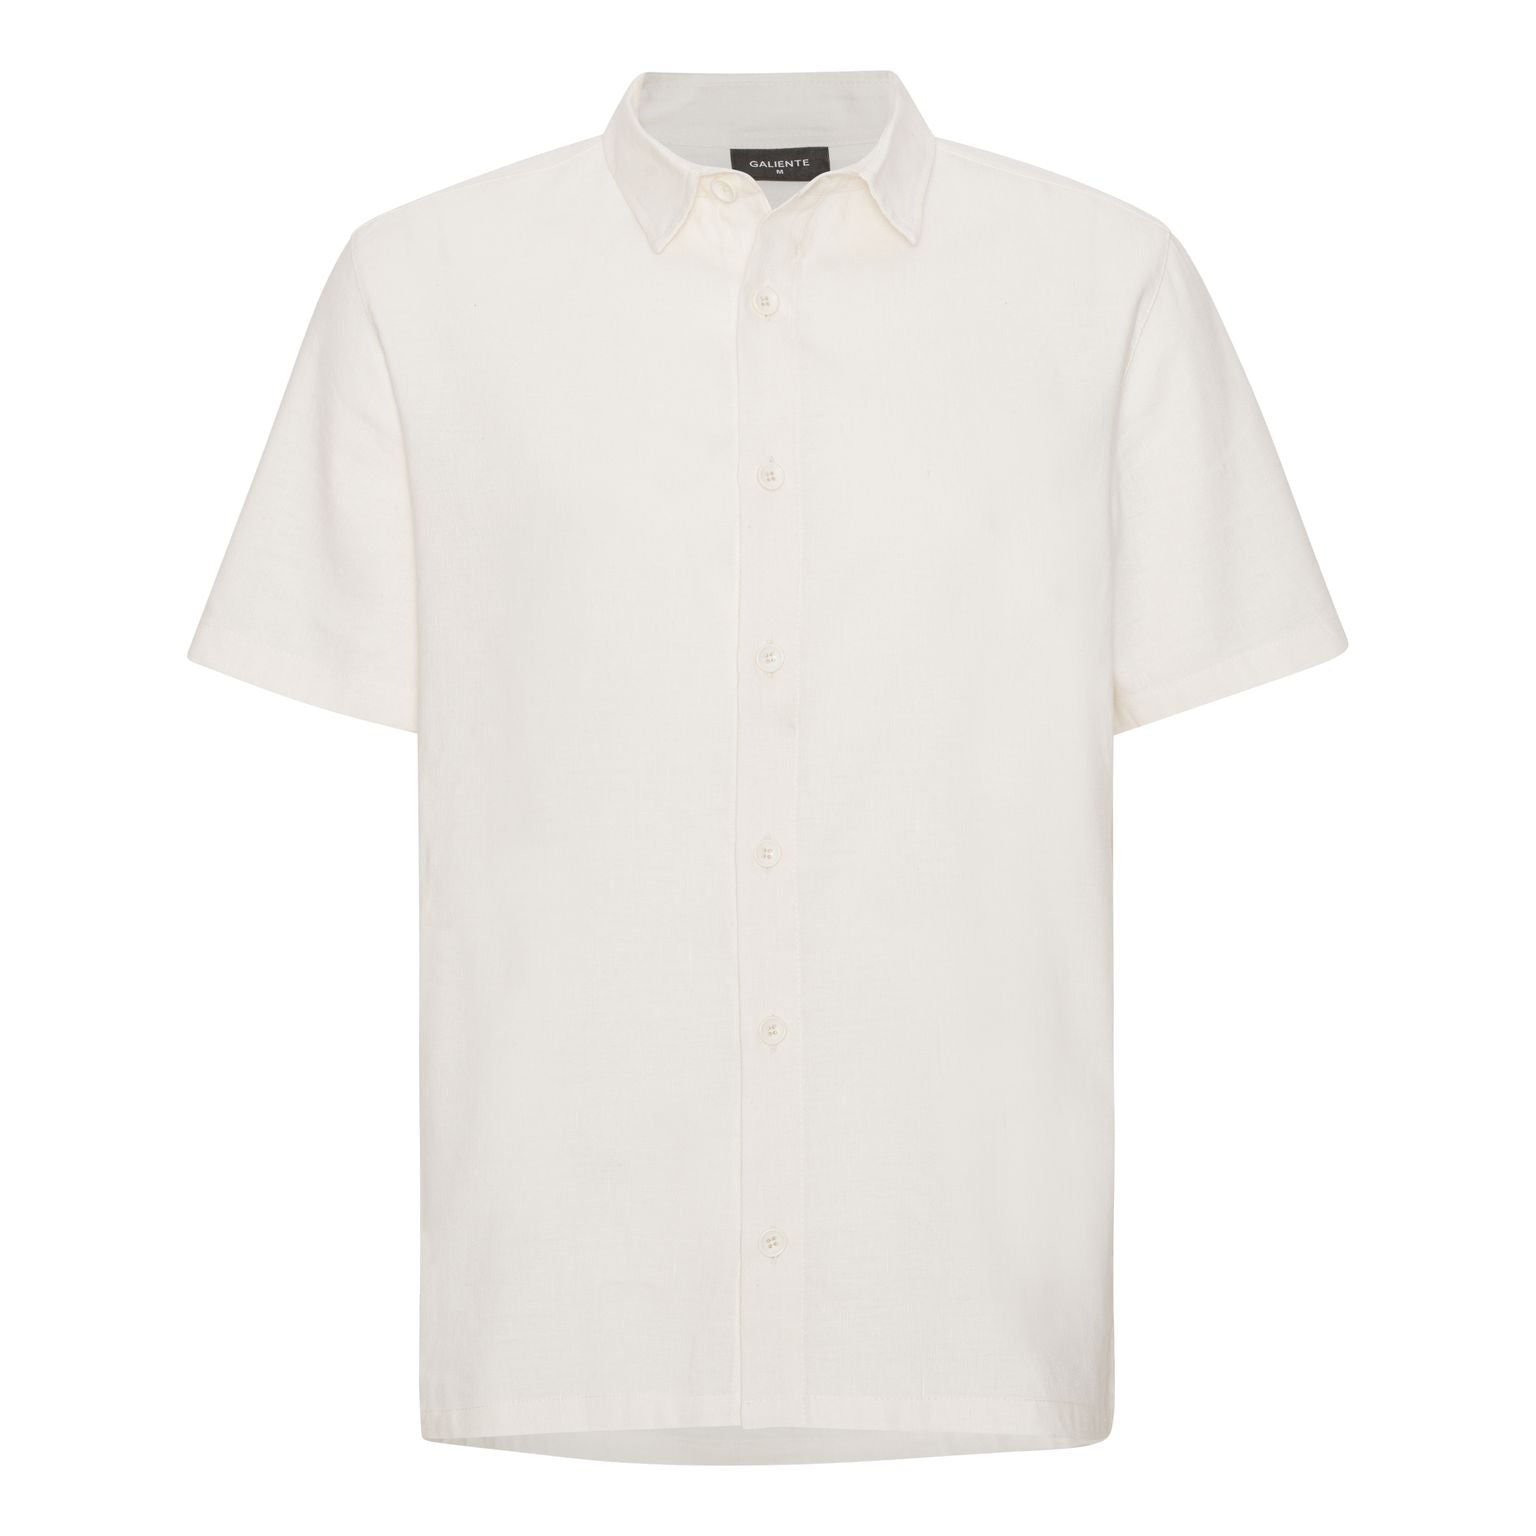 Off-white short-sleeved linen shirt